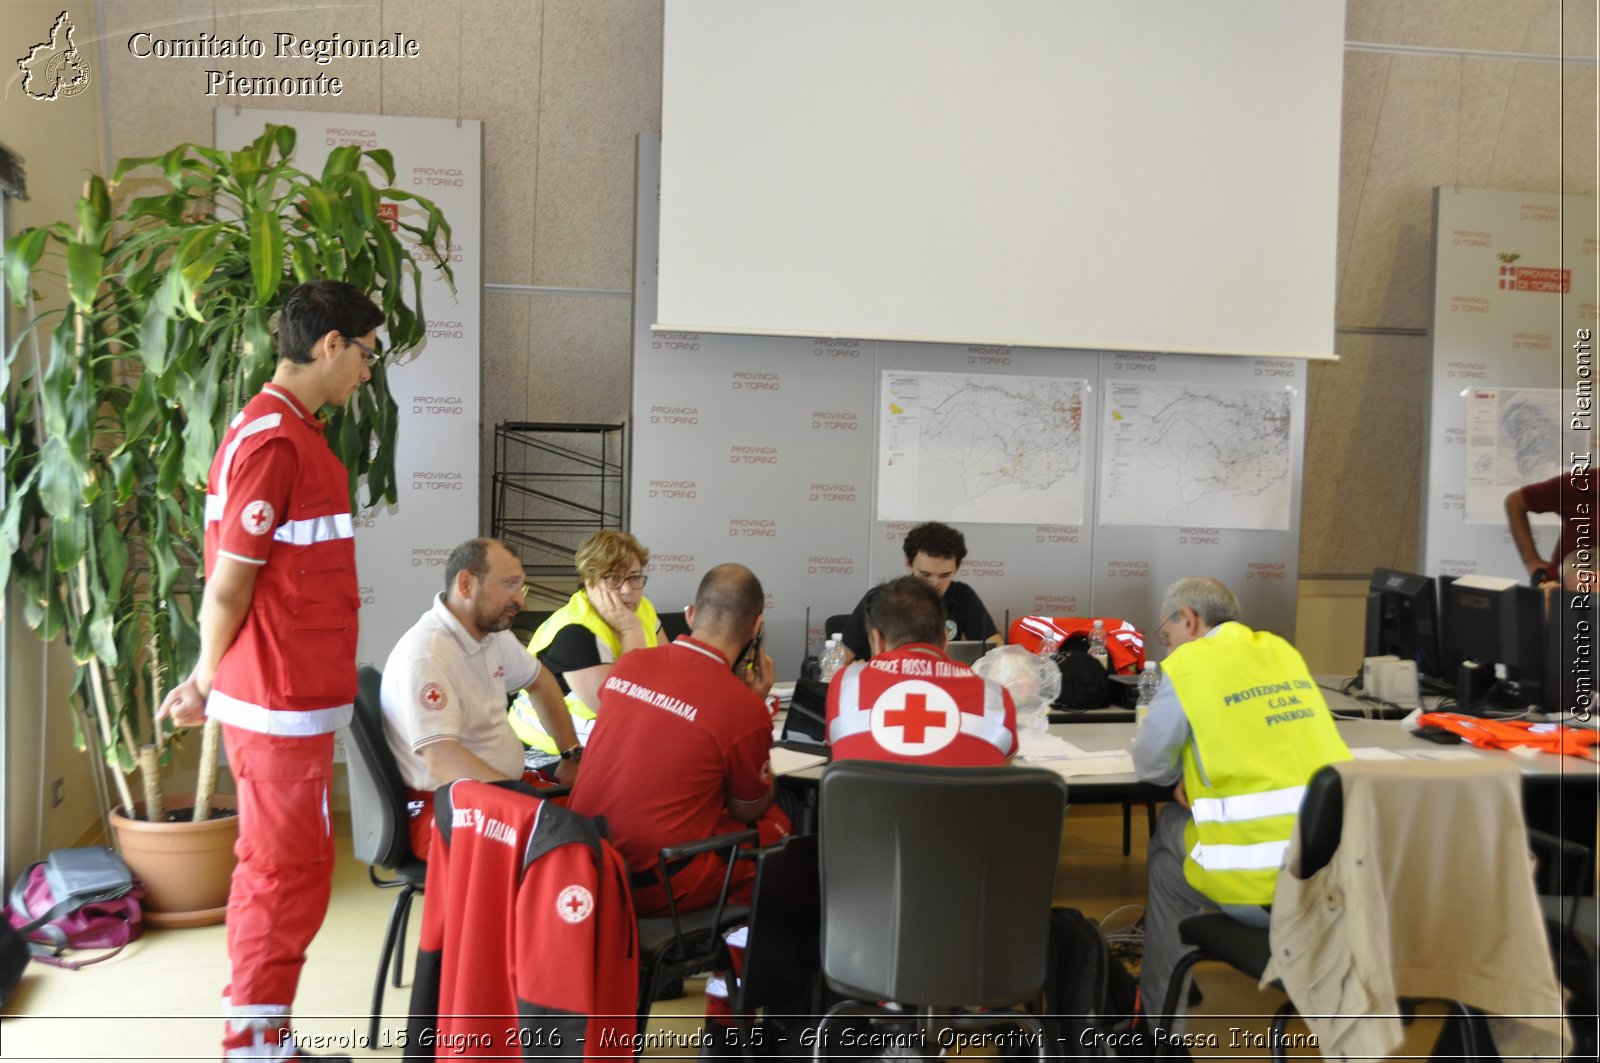 Pinerolo 15 Giugno 2016 - Magnitudo 5.5 - Gli Scenari Operativi - Croce Rossa Italiana- Comitato Regionale del Piemonte